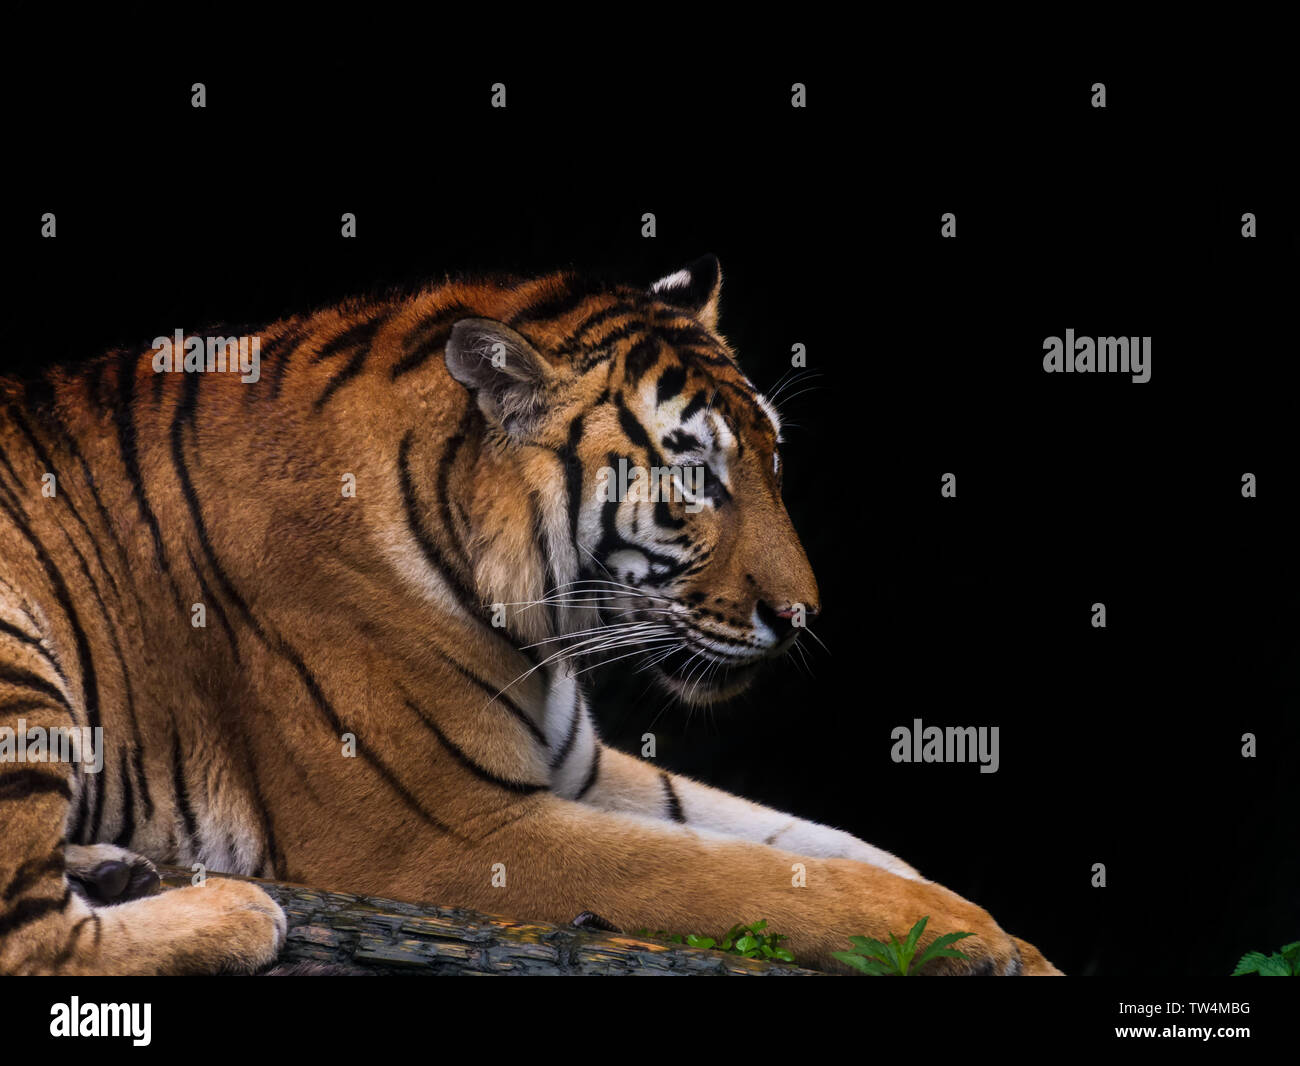 south china tiger Stock Photo